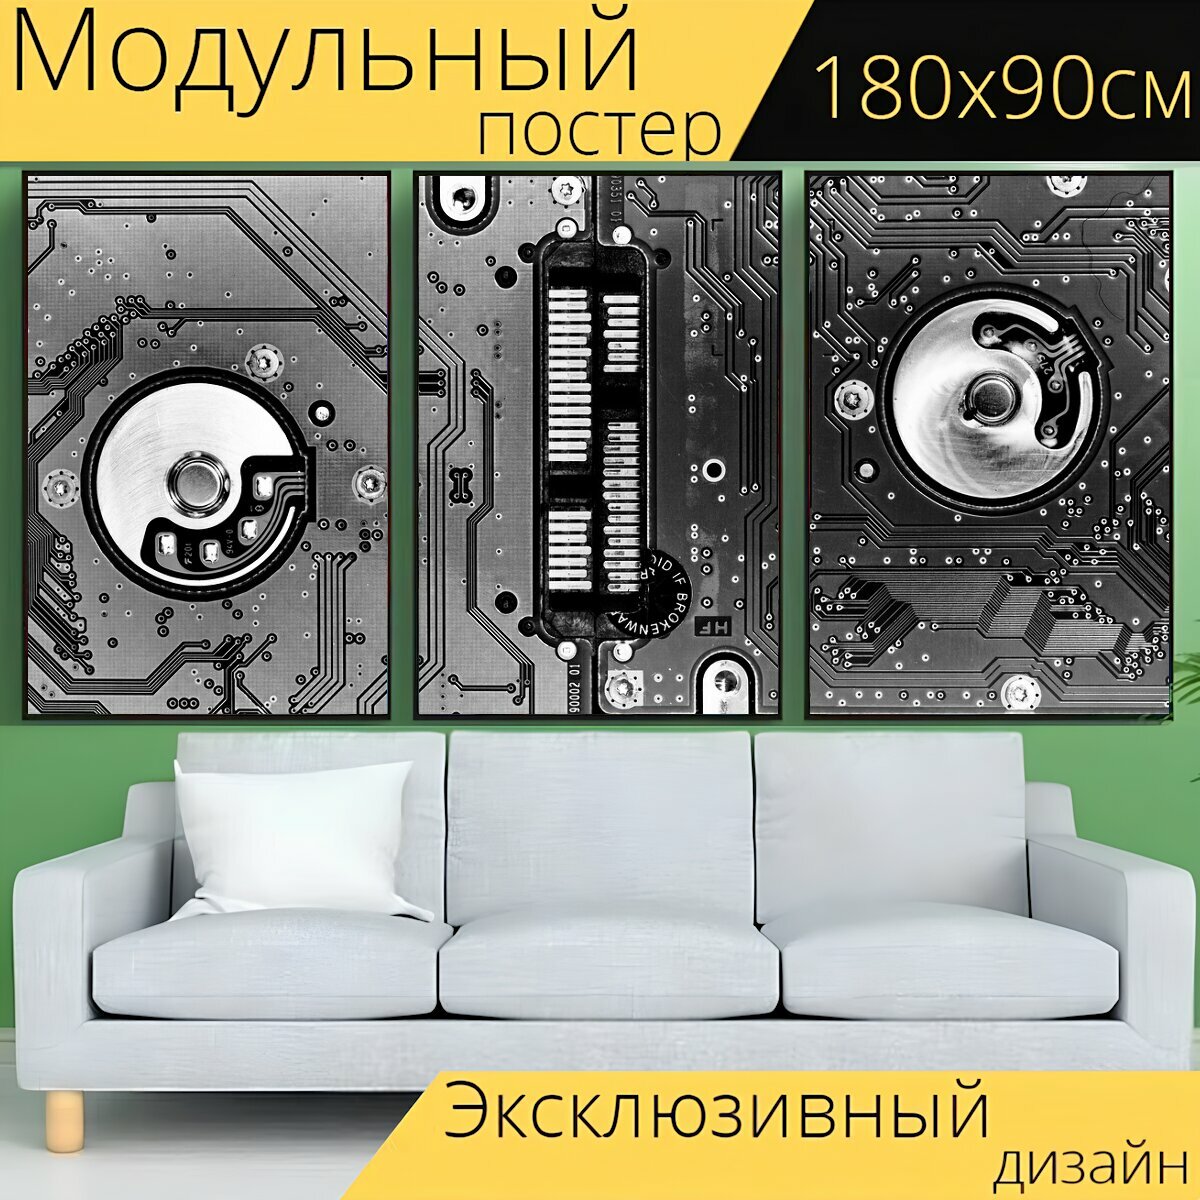 Модульный постер "Диск, жесткий диск, электрон" 180 x 90 см. для интерьера